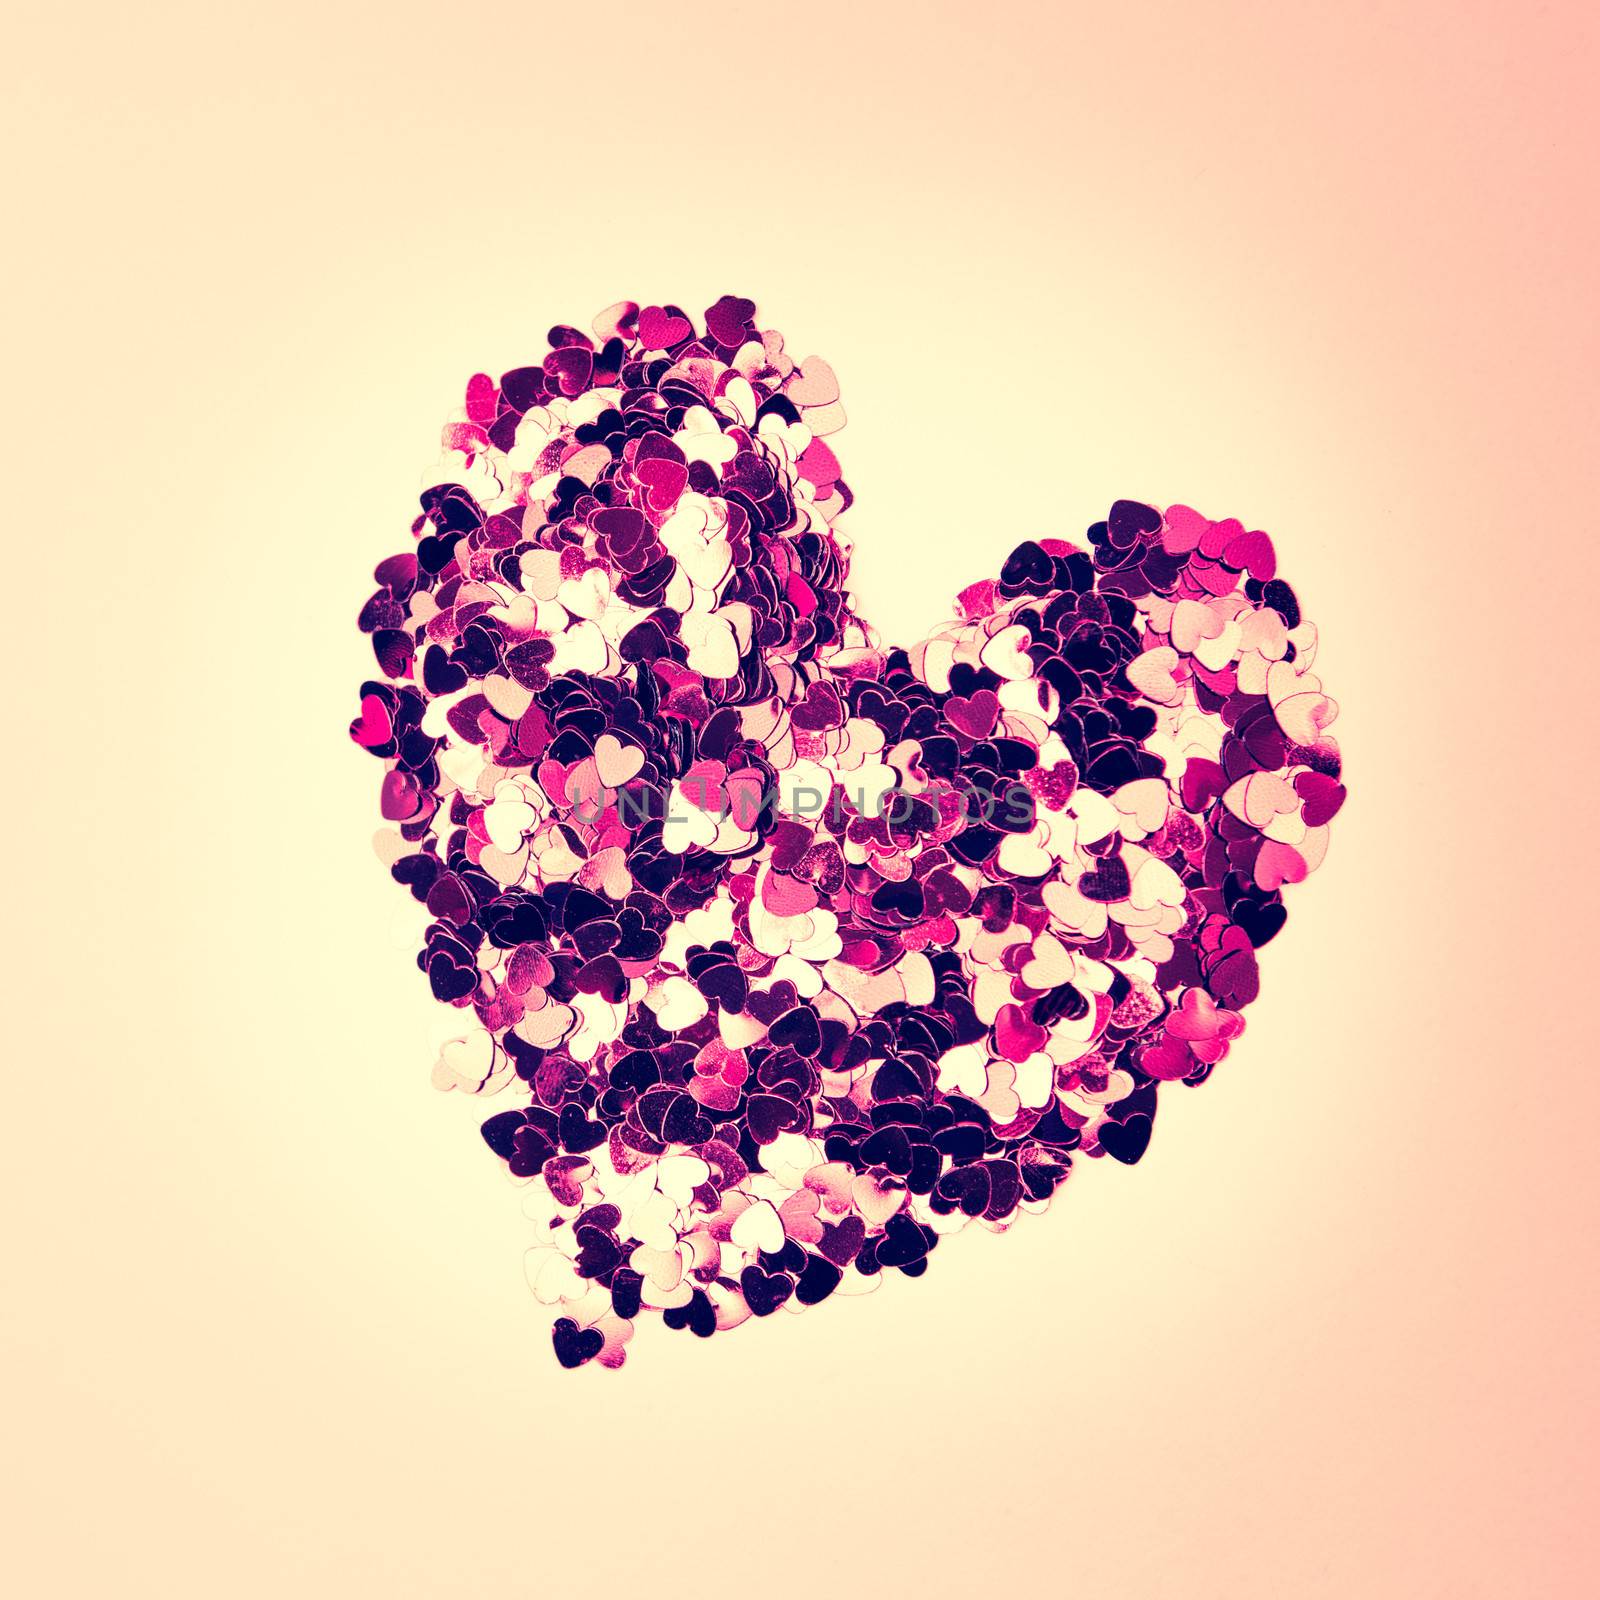 Pink confetti in heart shape by Wavebreakmedia